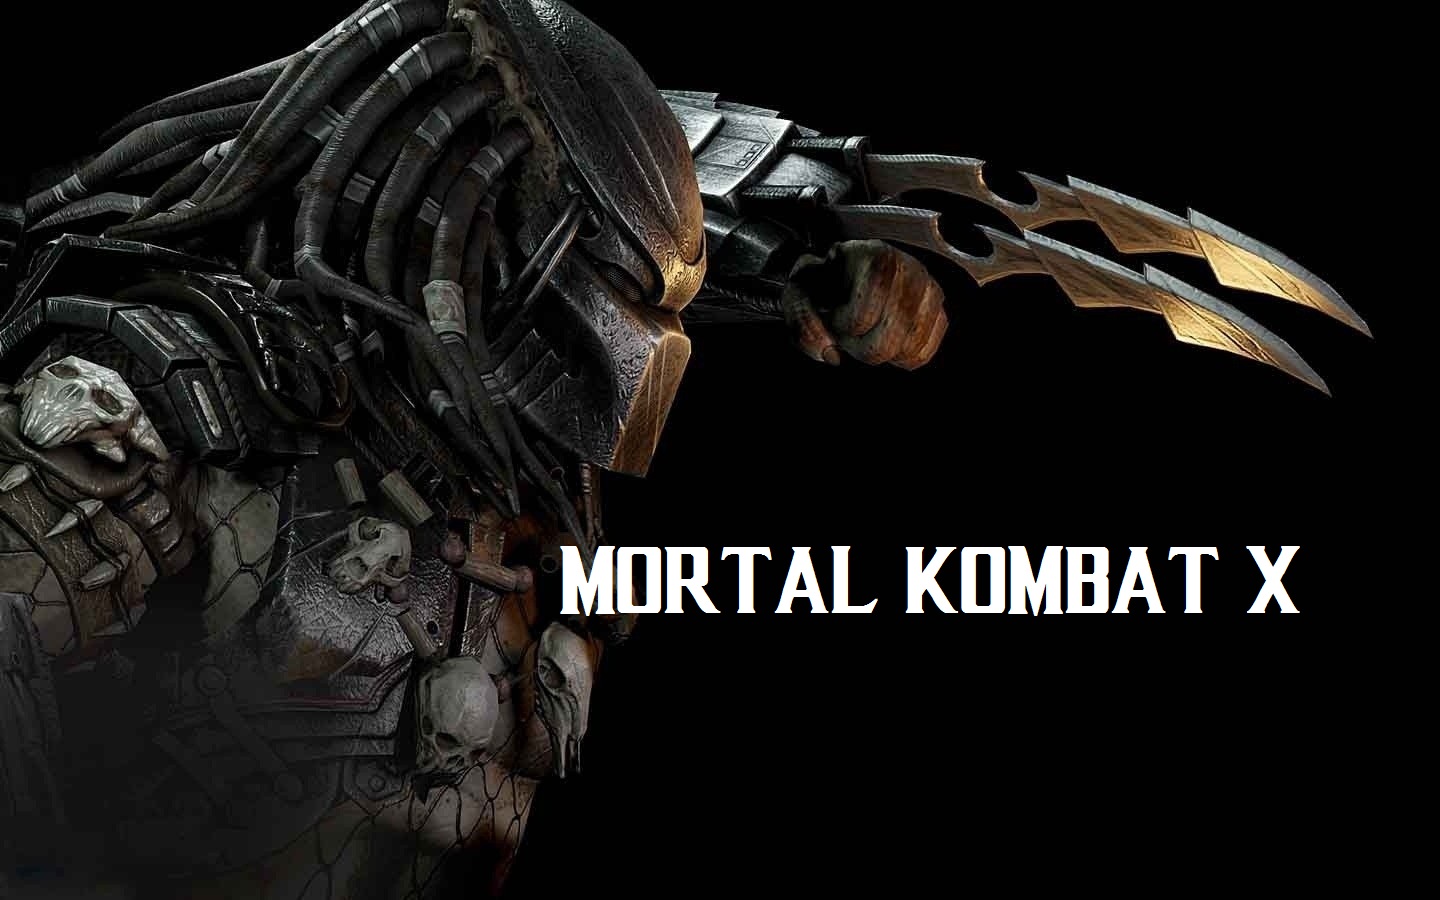 Mortal Kombat X Wallpaper For iPhone Predator